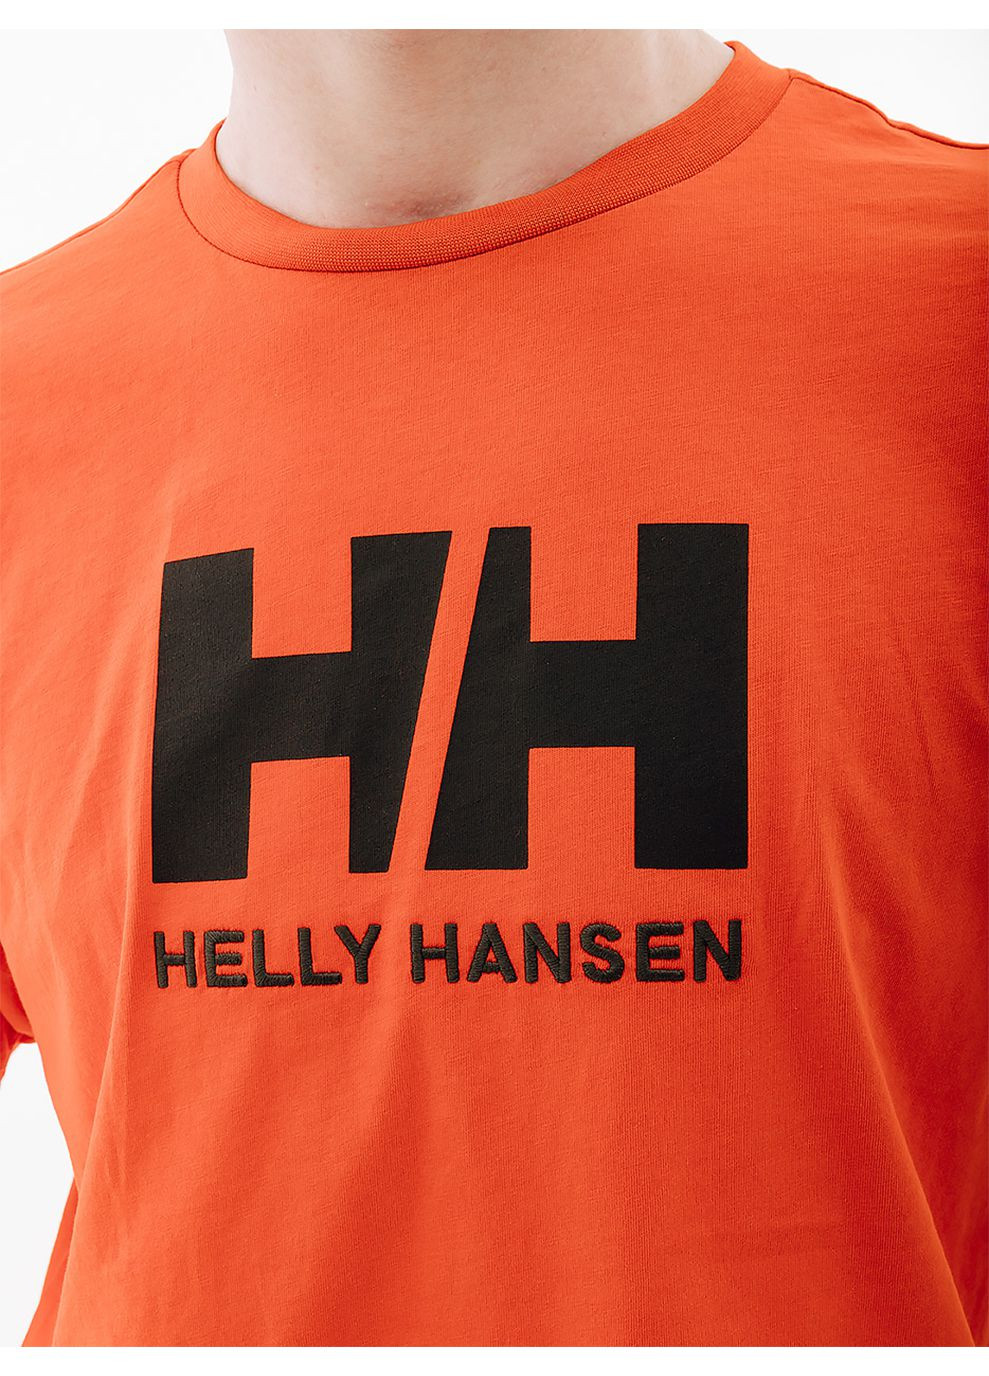 Оранжевая мужская футболка hh logo t-shirt оранжевый Helly Hansen